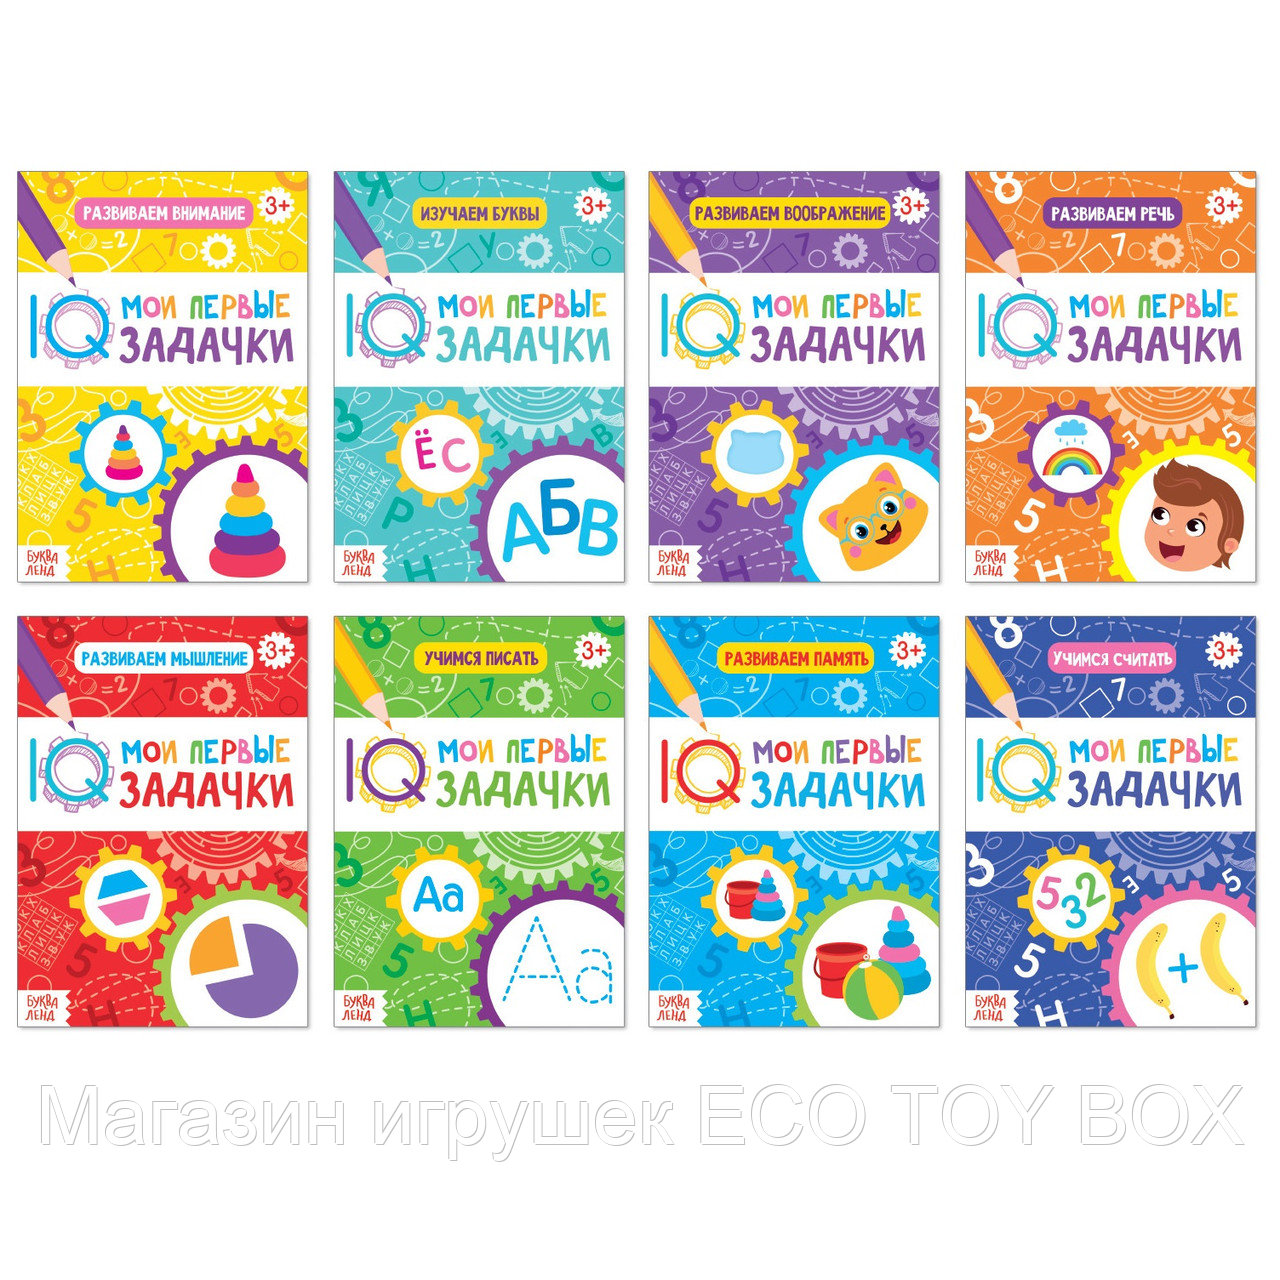 Книги набор «Мои первые IQ задачки», фото 1